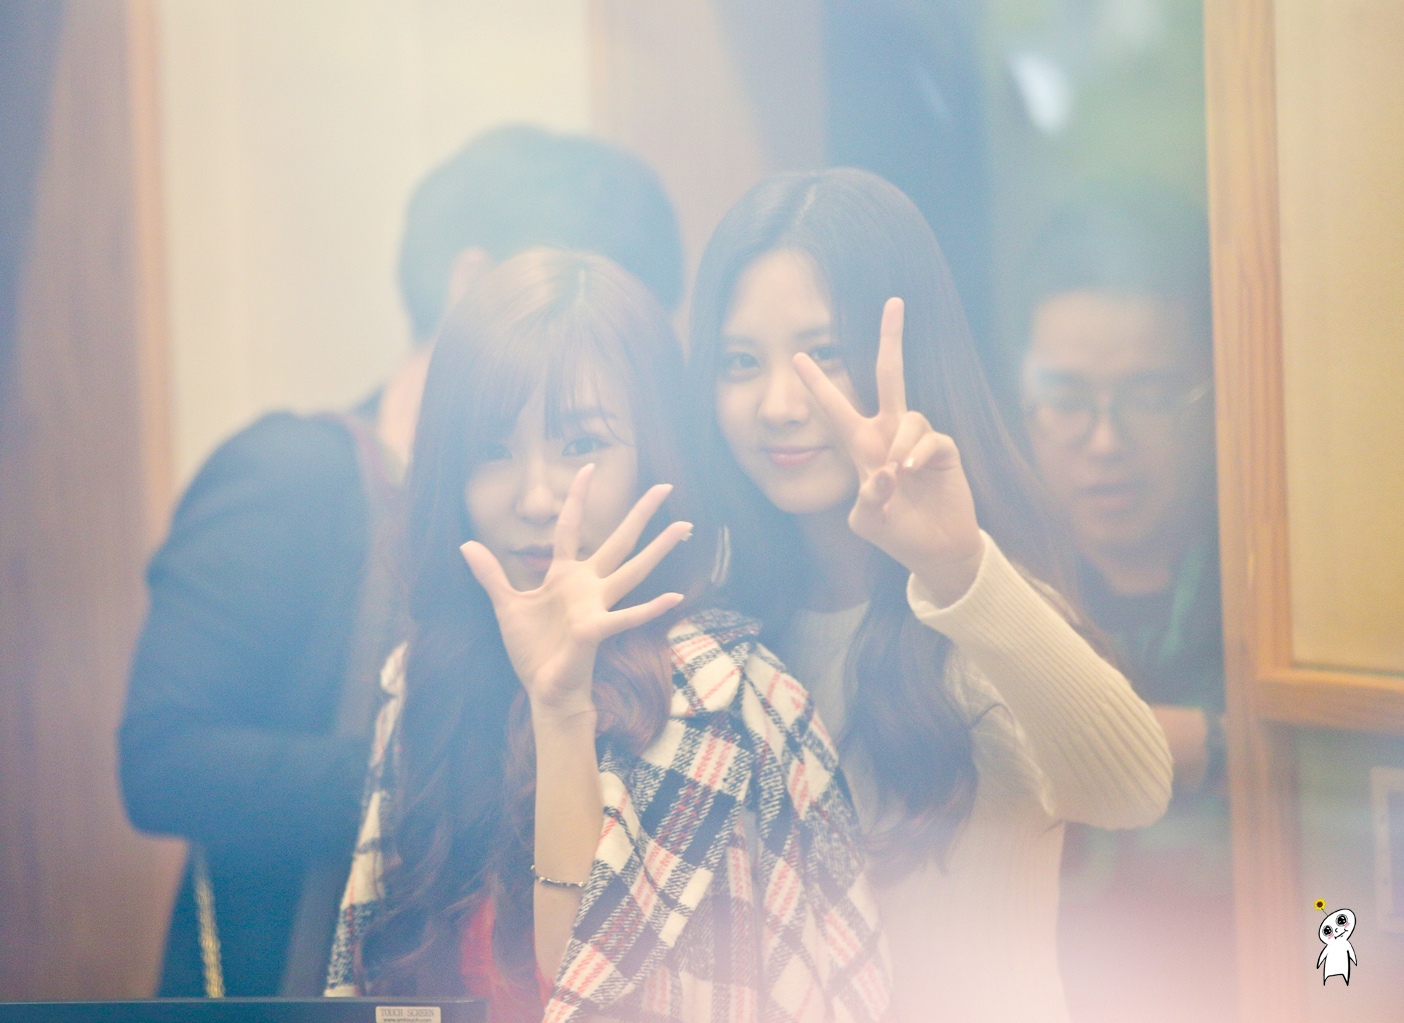 [PIC][29-10-2013]SeoHyun và Tiffany xuất hiện tại "KBS Cool FM Radio Jo JungChi & Harim 2 o'clock" vào trưa nay 2472A33B527846682CAB48